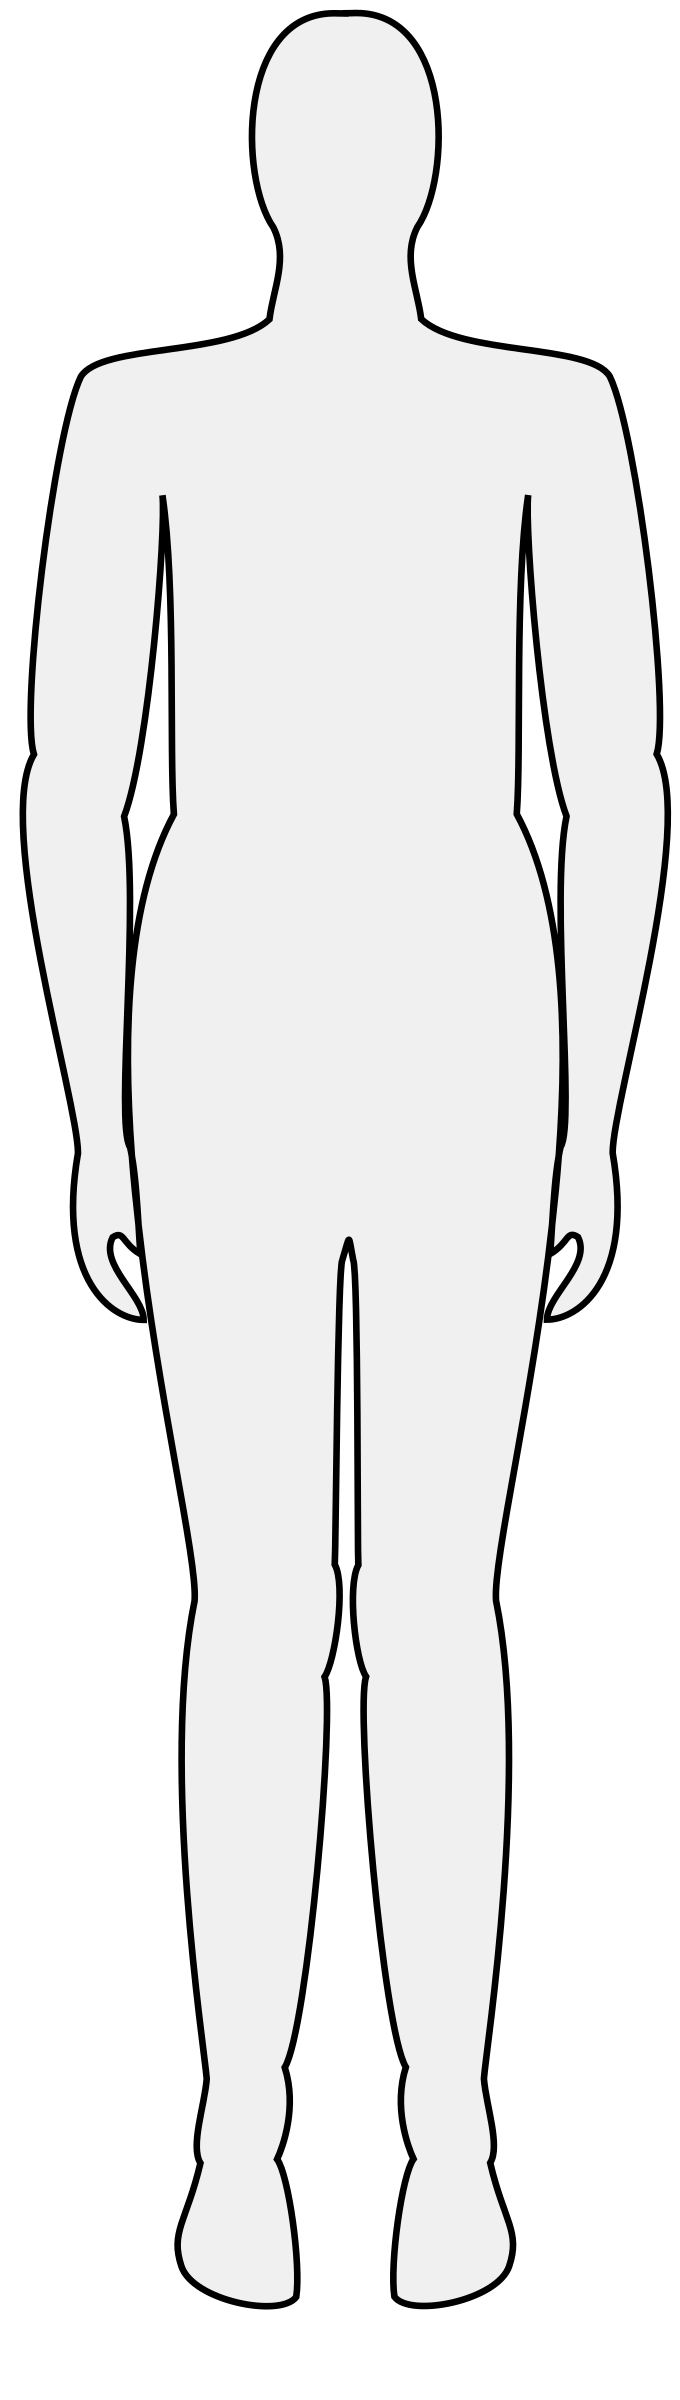 Clipart - Male body silhouette